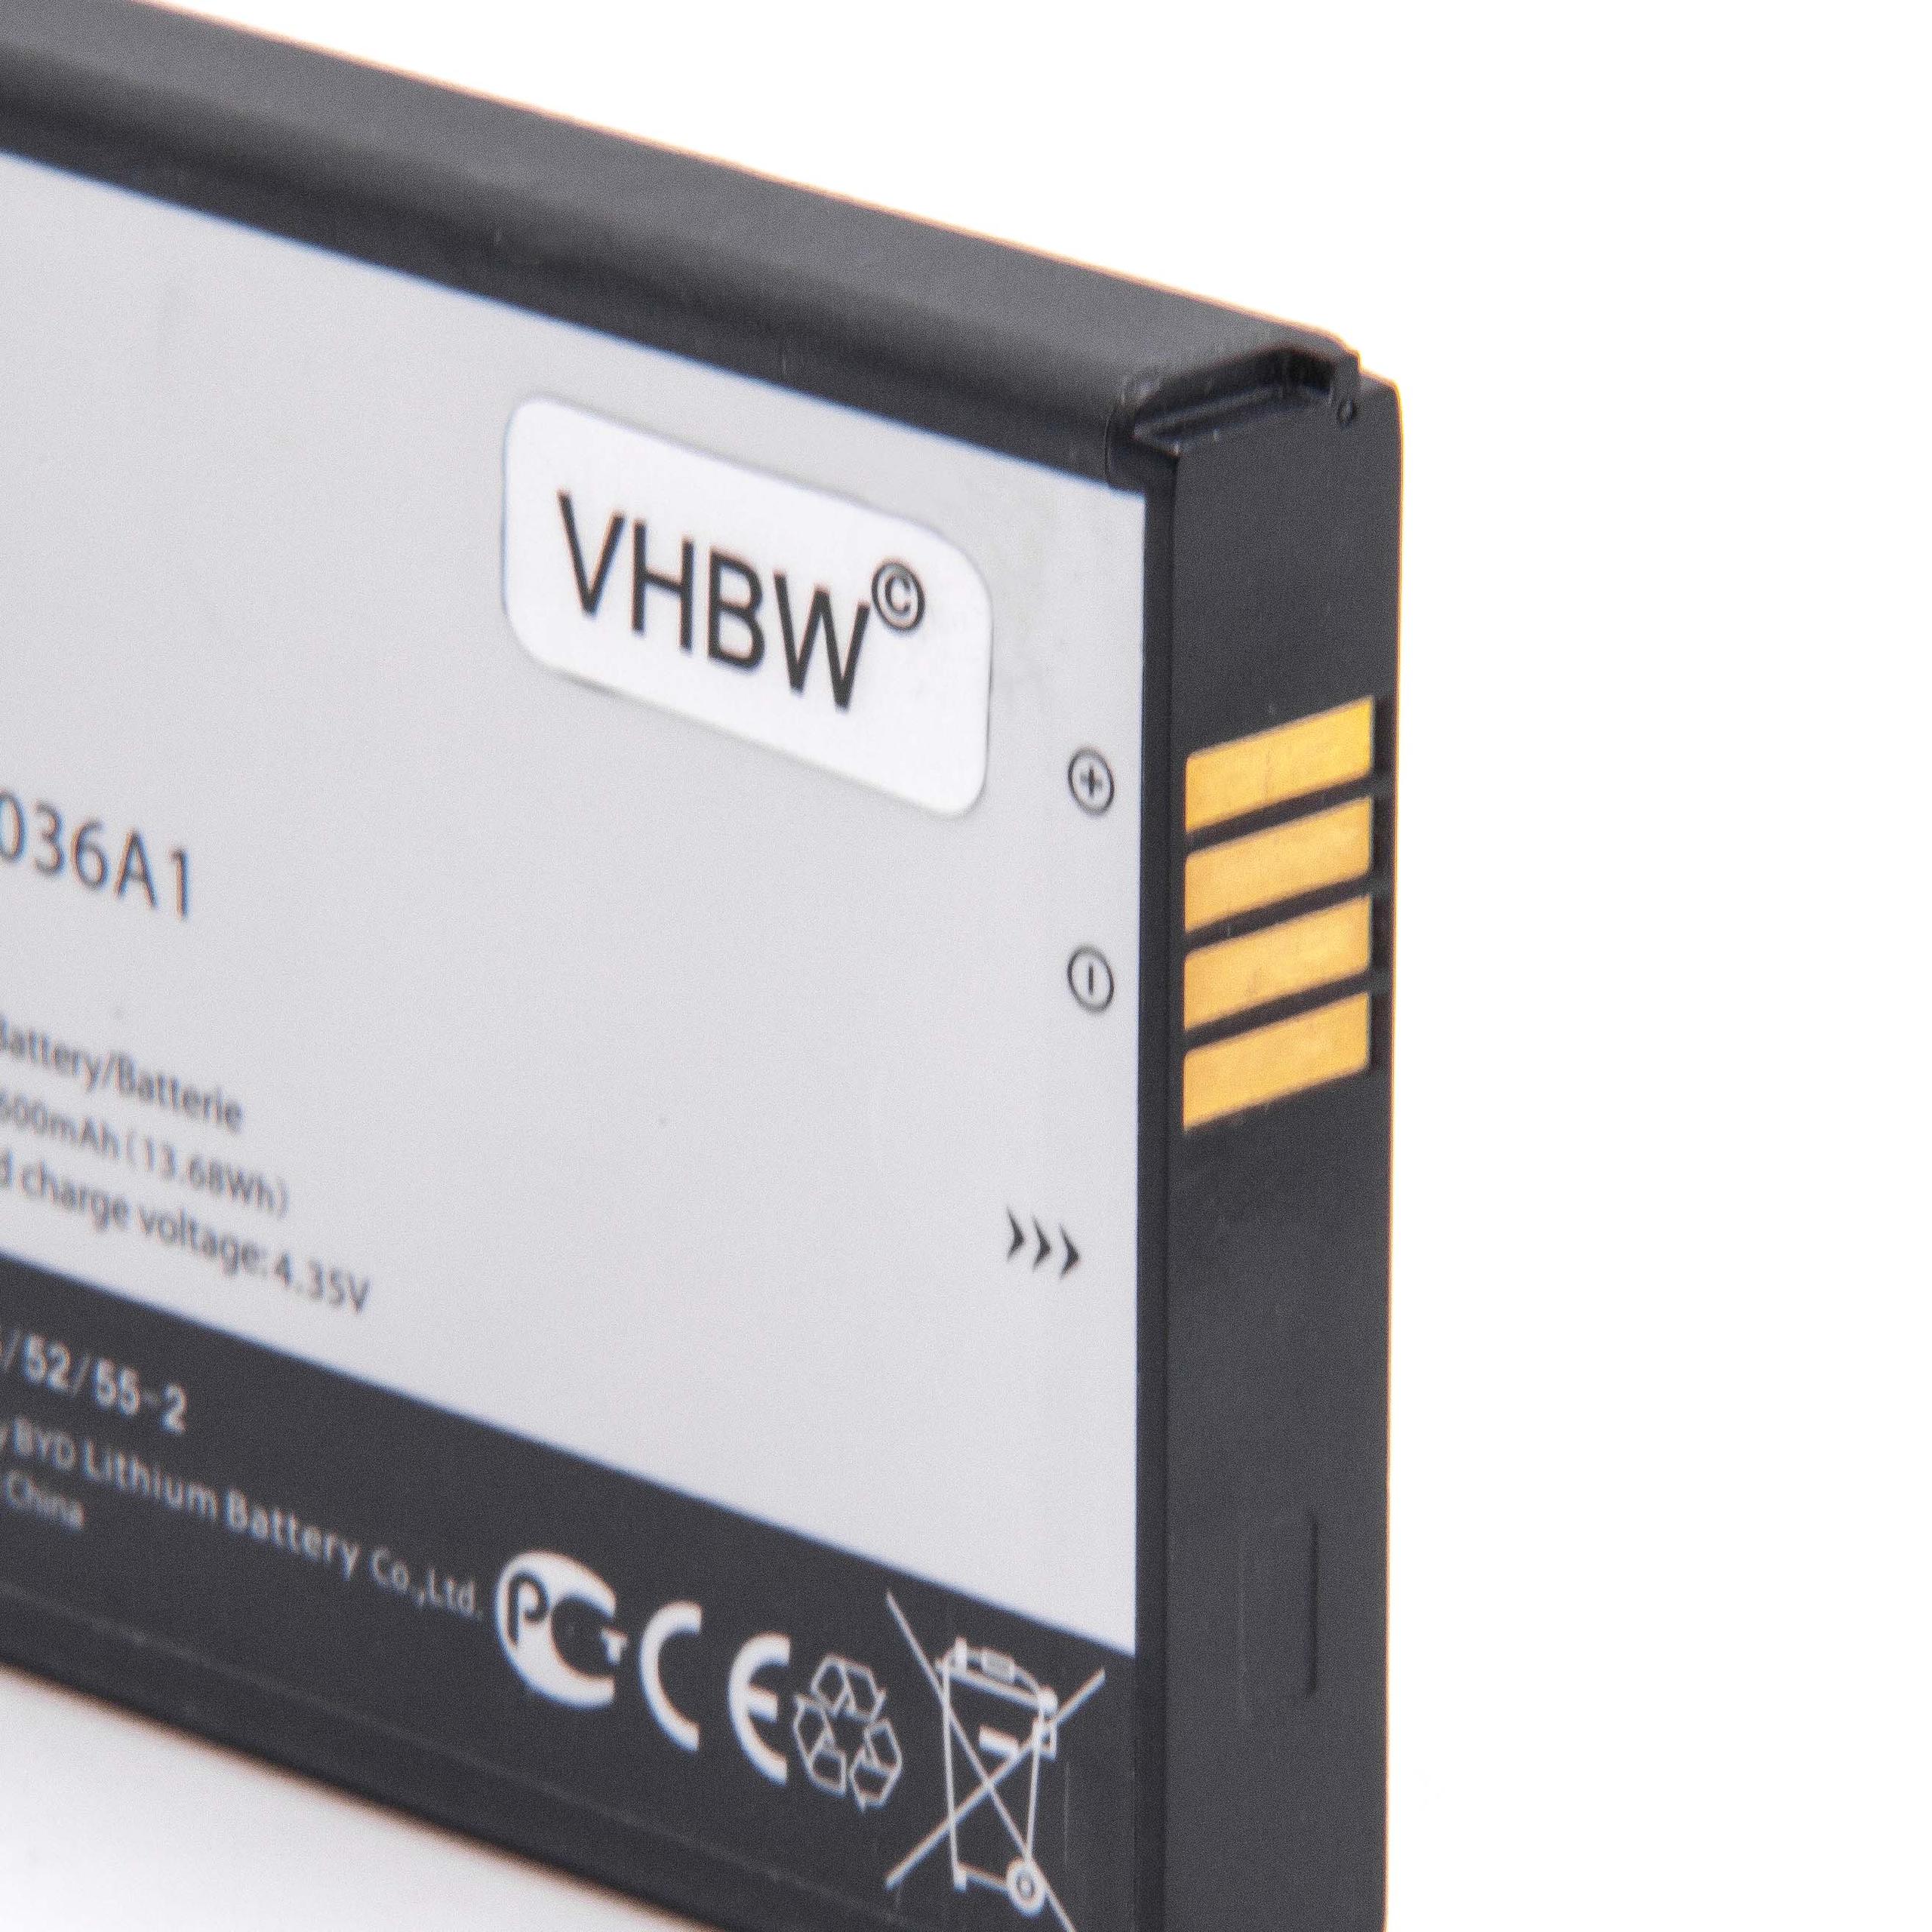 Batterie remplace TLi036A1 pour routeur modem - 3800mAh 3,8V Li-ion